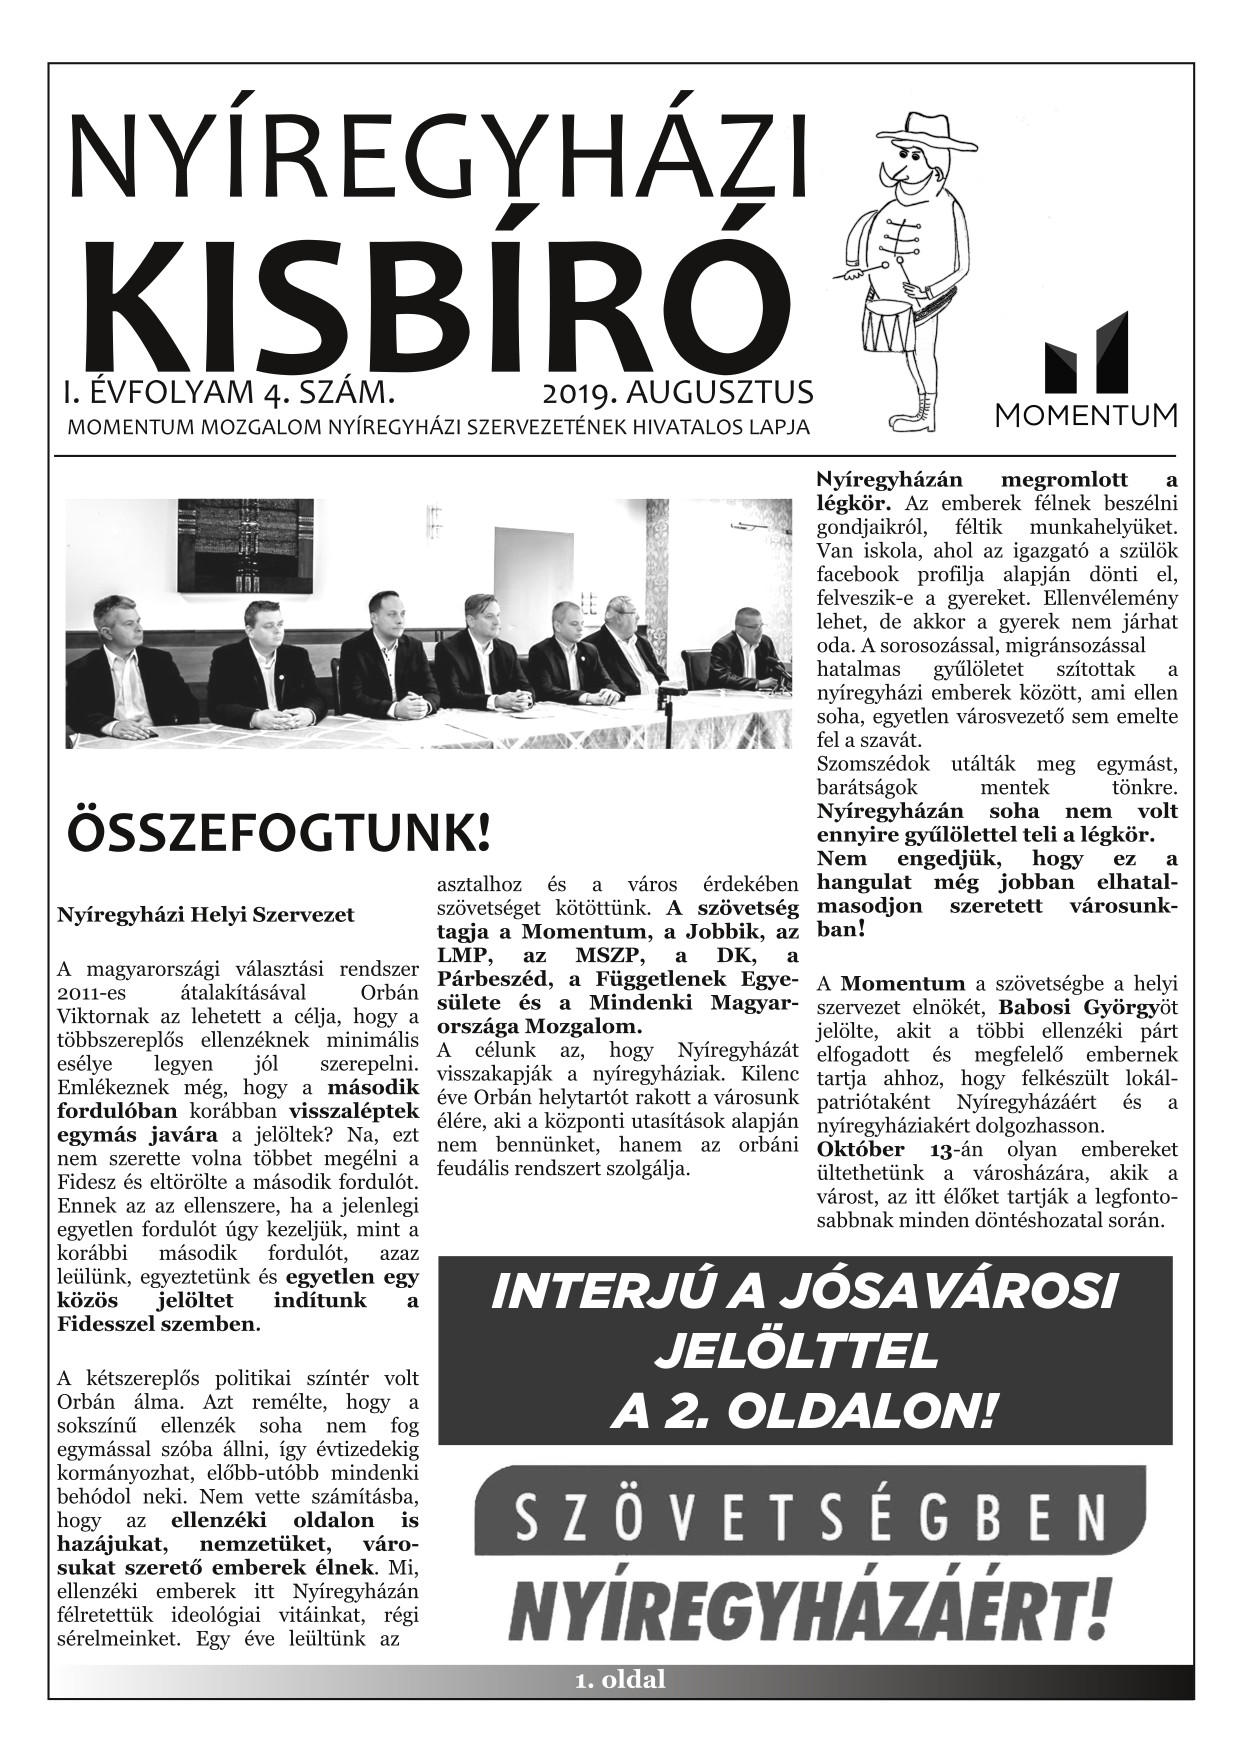 Nyíregyházi Kisbíró 2019. augusztus